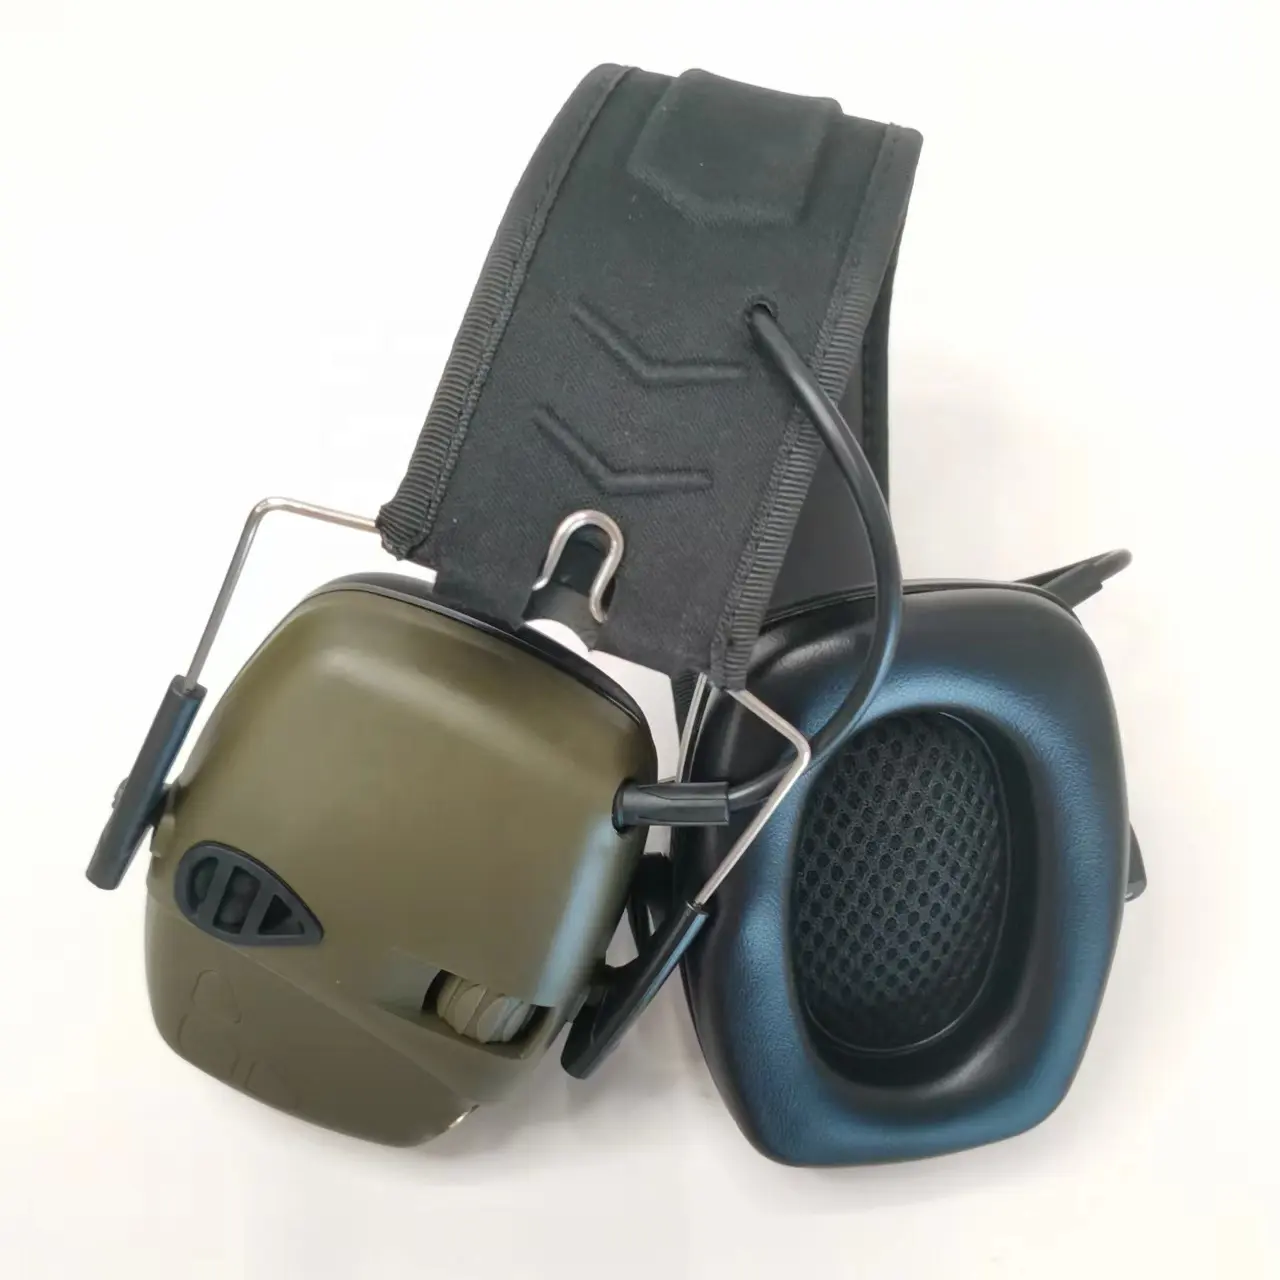 HXKK HX-Z22 hochwertige elektronische Ohren schützer Gehörschutz für Schießen Gehörschutz für die Jagd Gehörschutz Headset